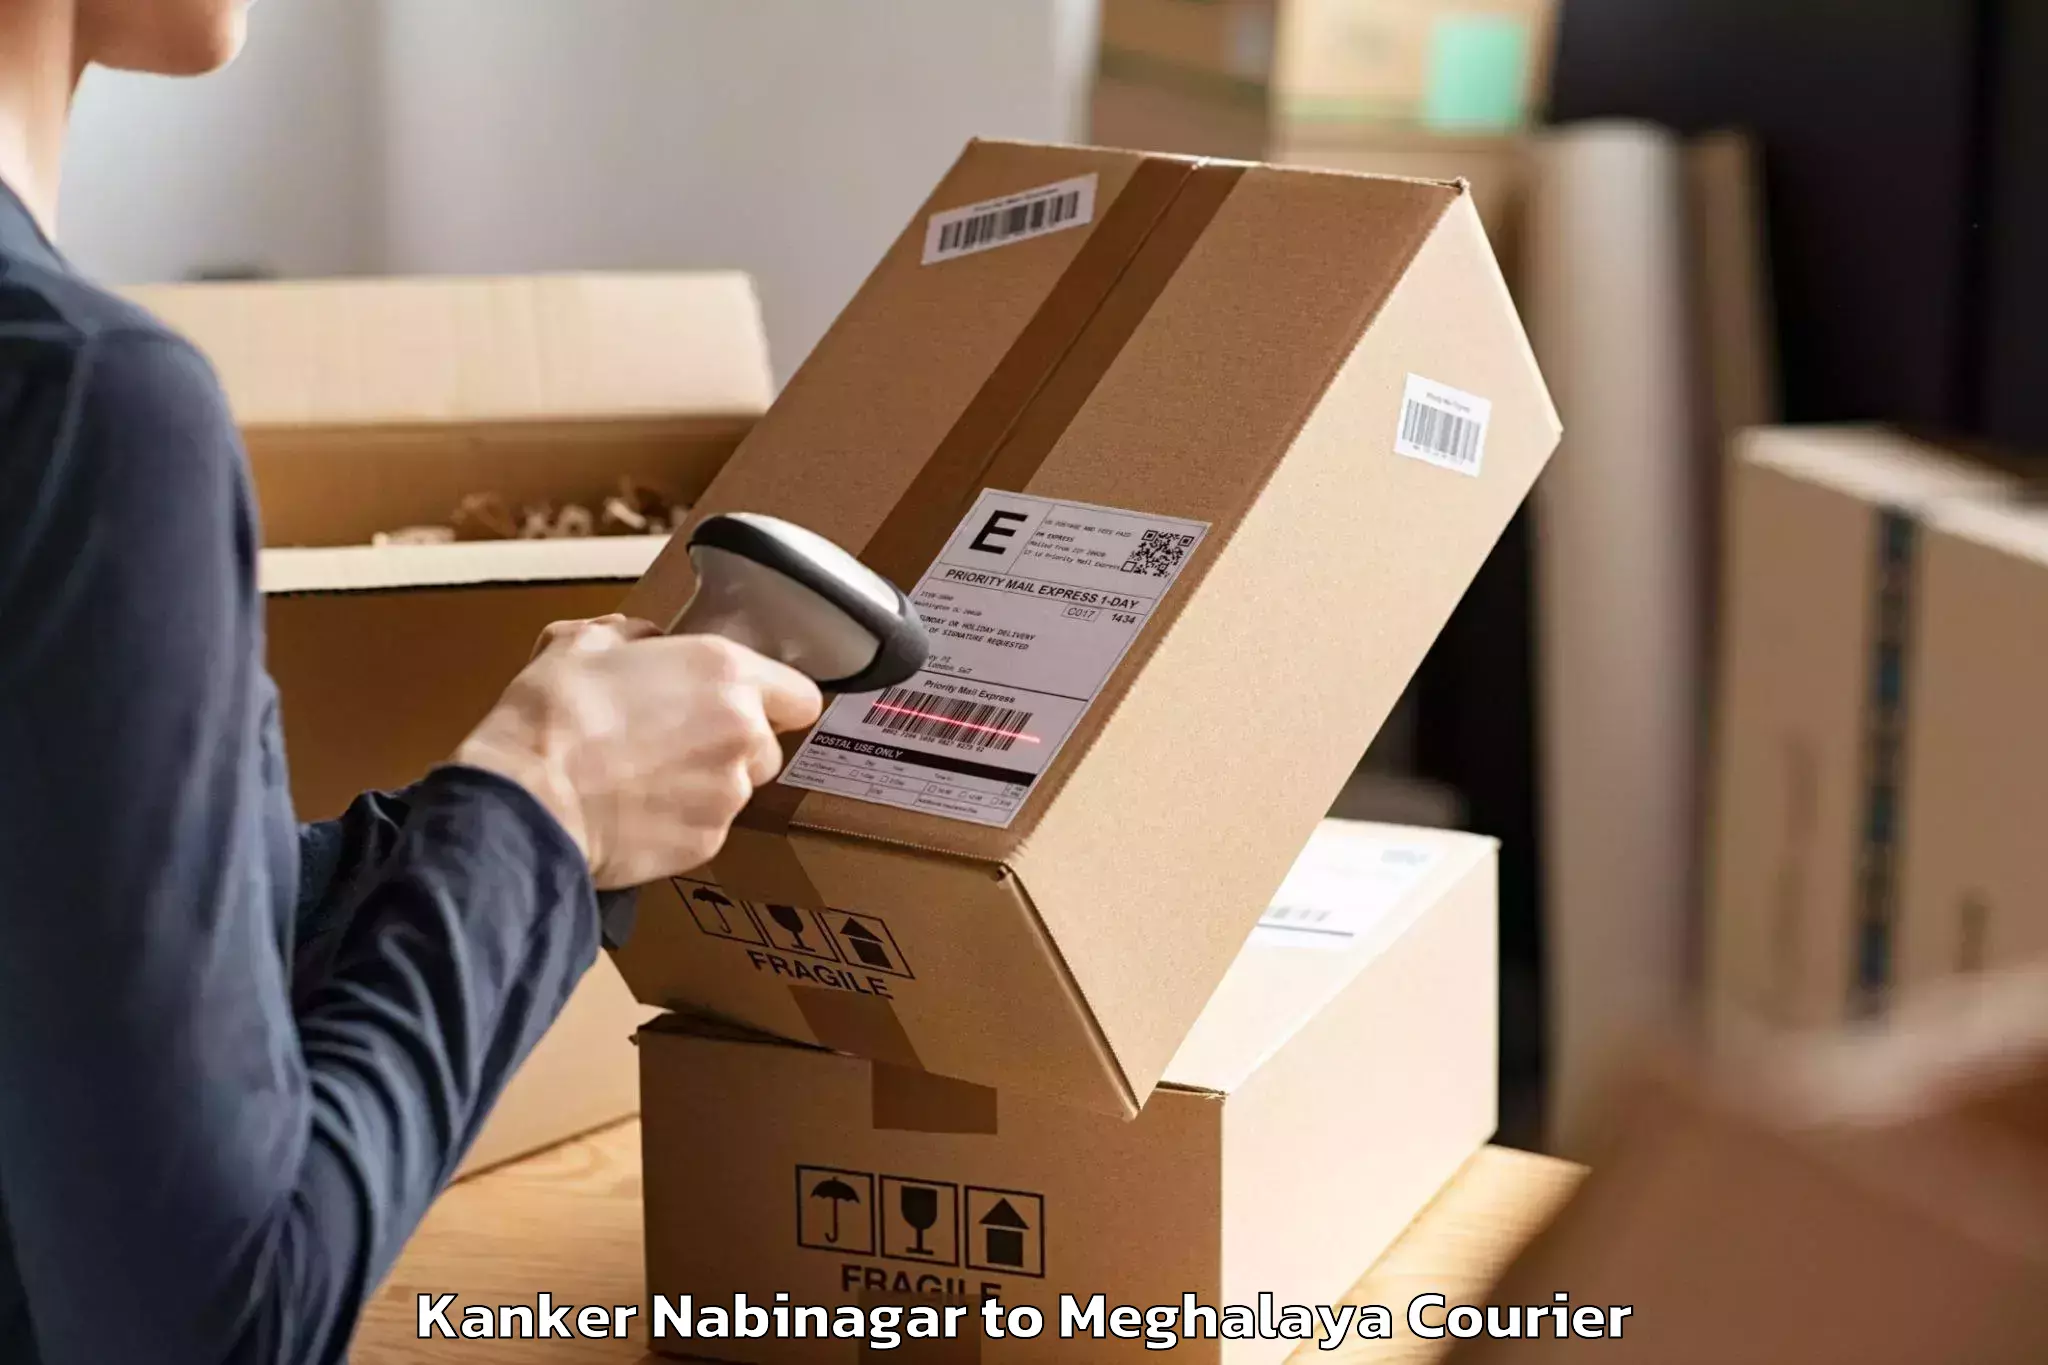 Skilled furniture movers Kanker Nabinagar to Meghalaya